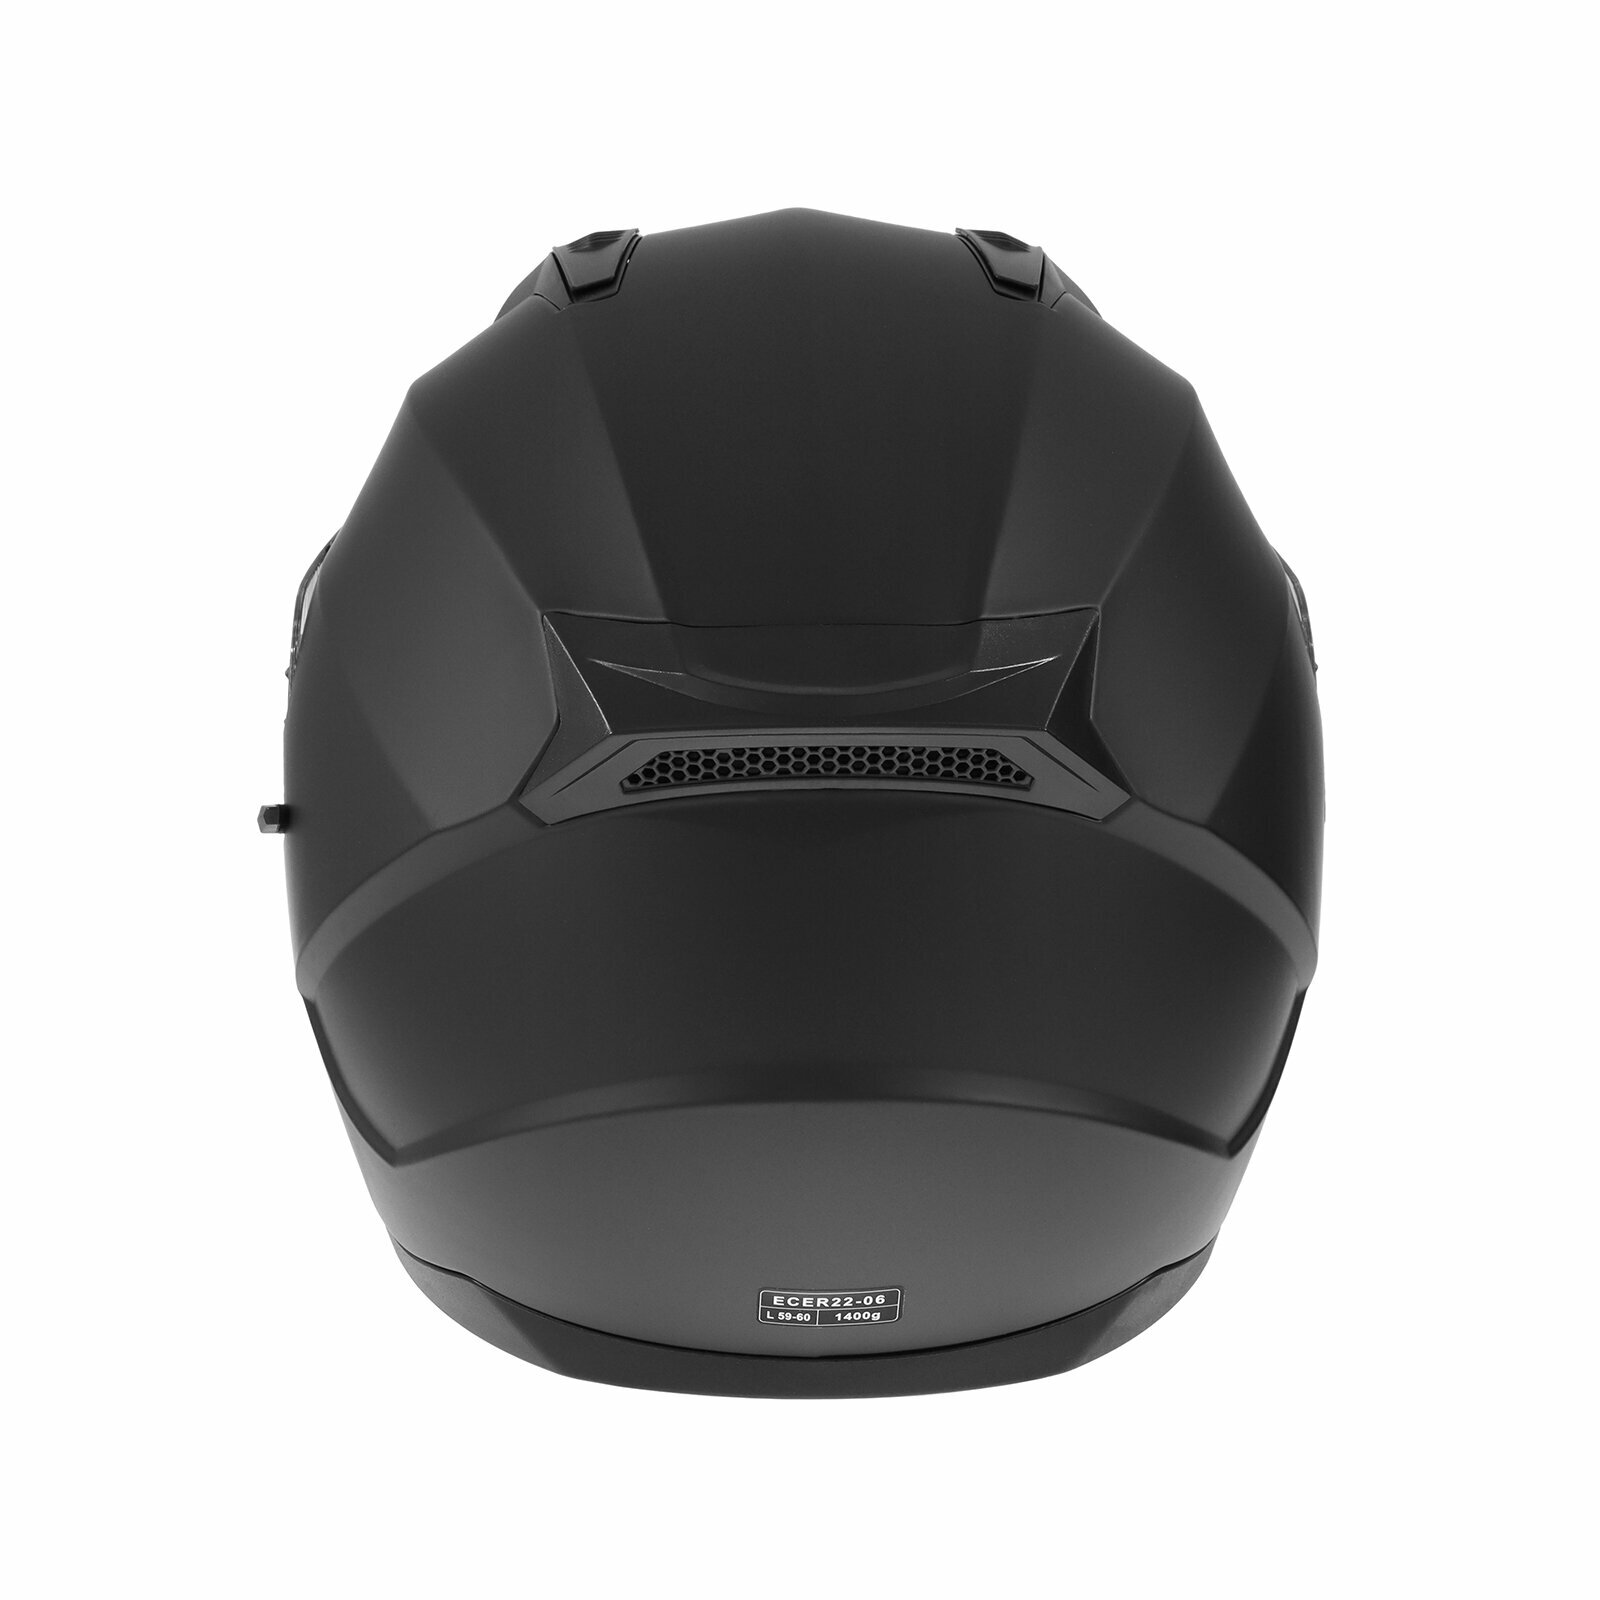 Шлем интеграл с двумя визорами, размер L, модель BLD-M67E, черный матовый 9845748